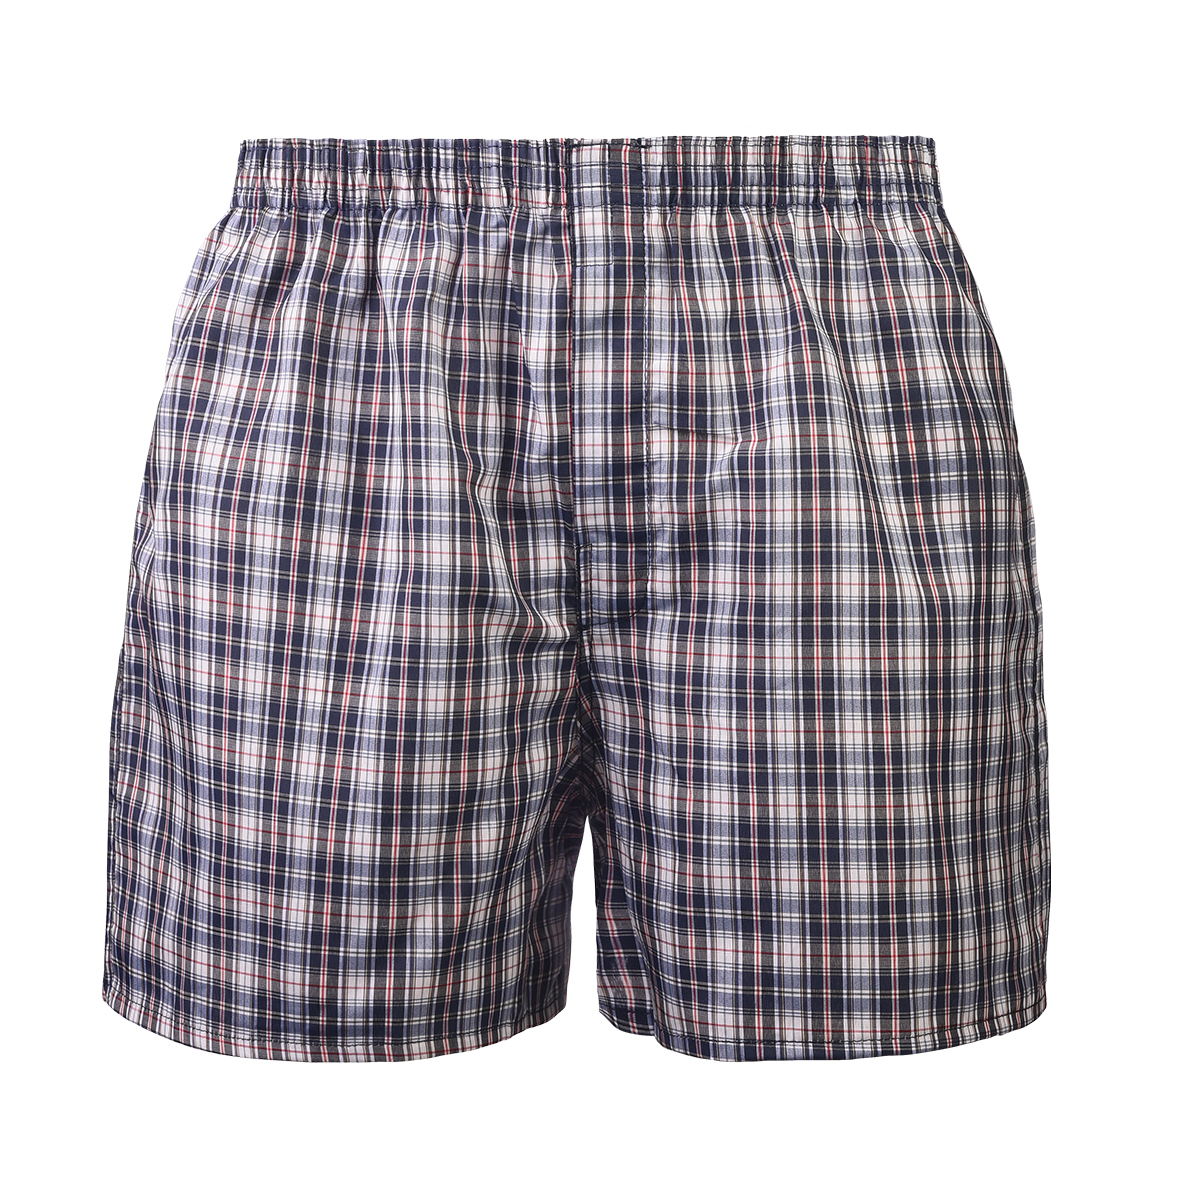 Wholesale Men's Woven Boxer Shorts, Large, Plaids - DollarDays